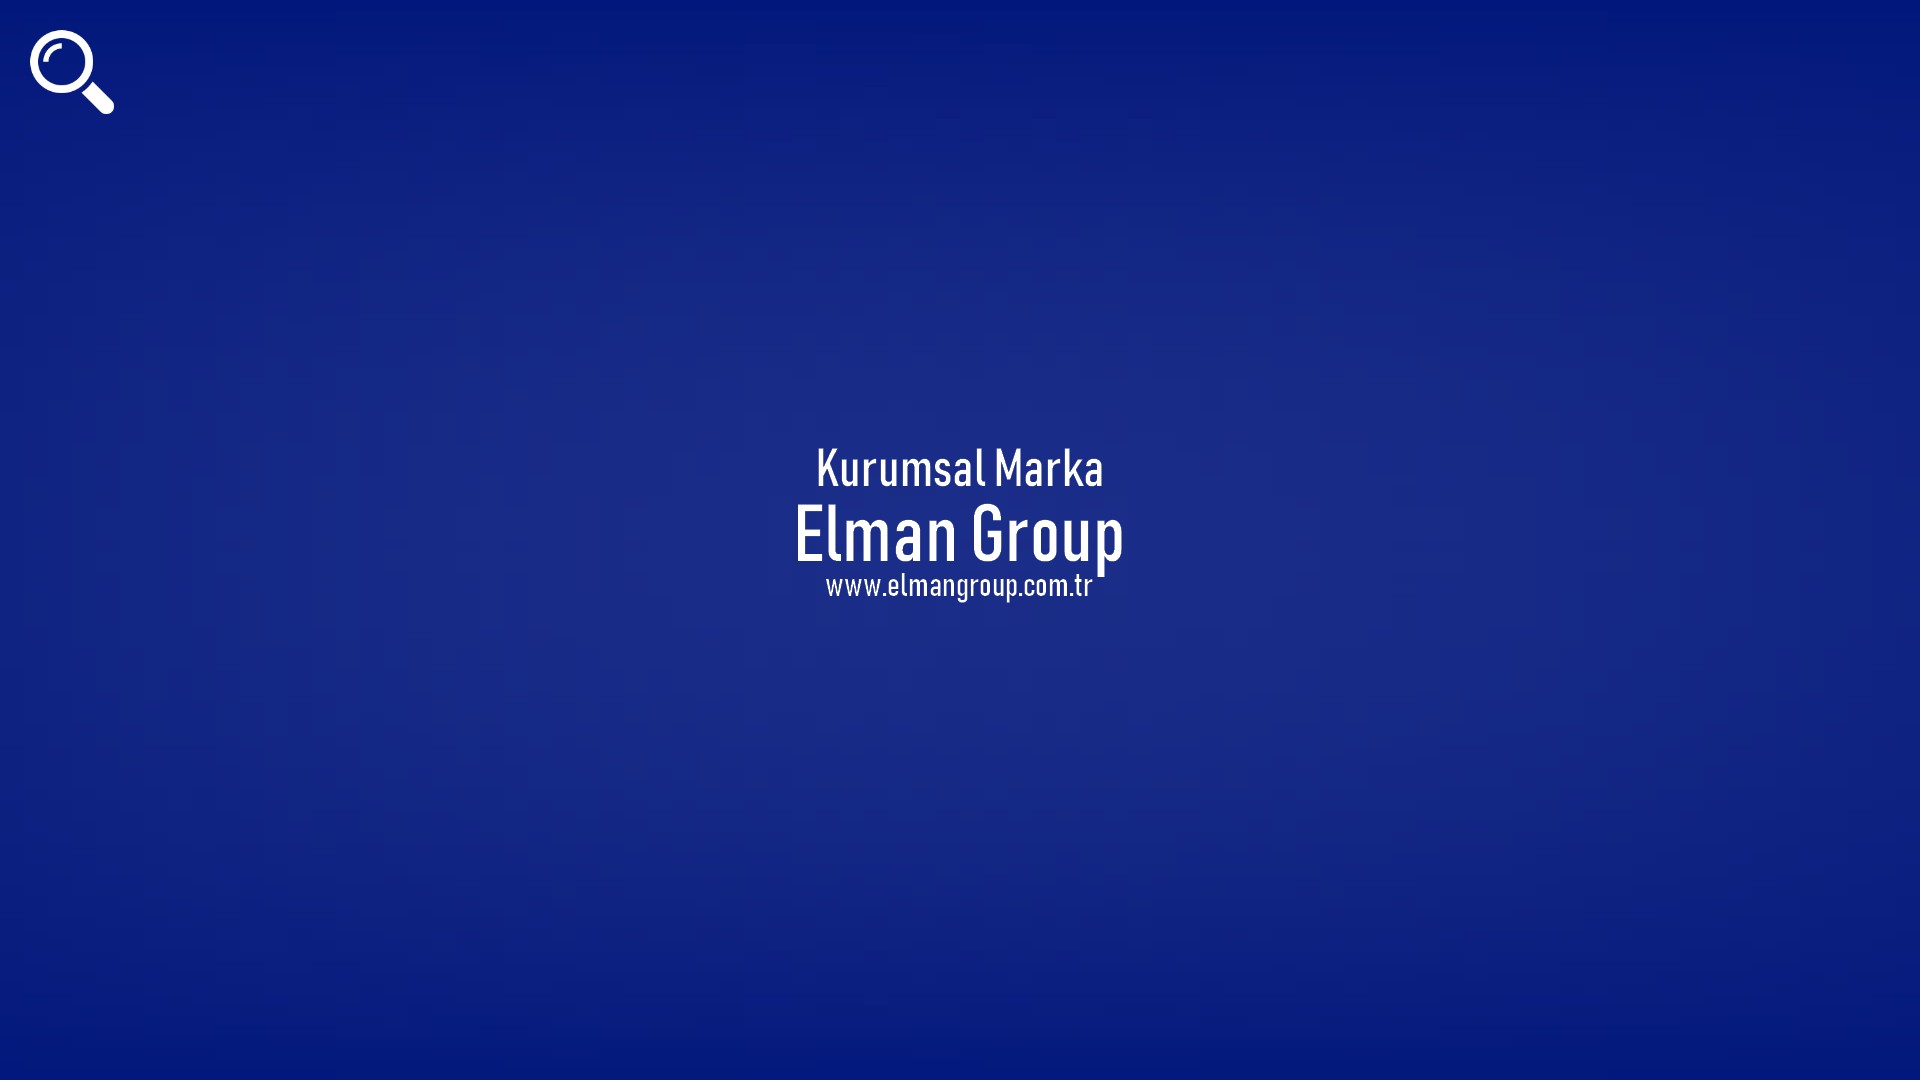 Elman Group başlıklı içeriğin kapak resmi.